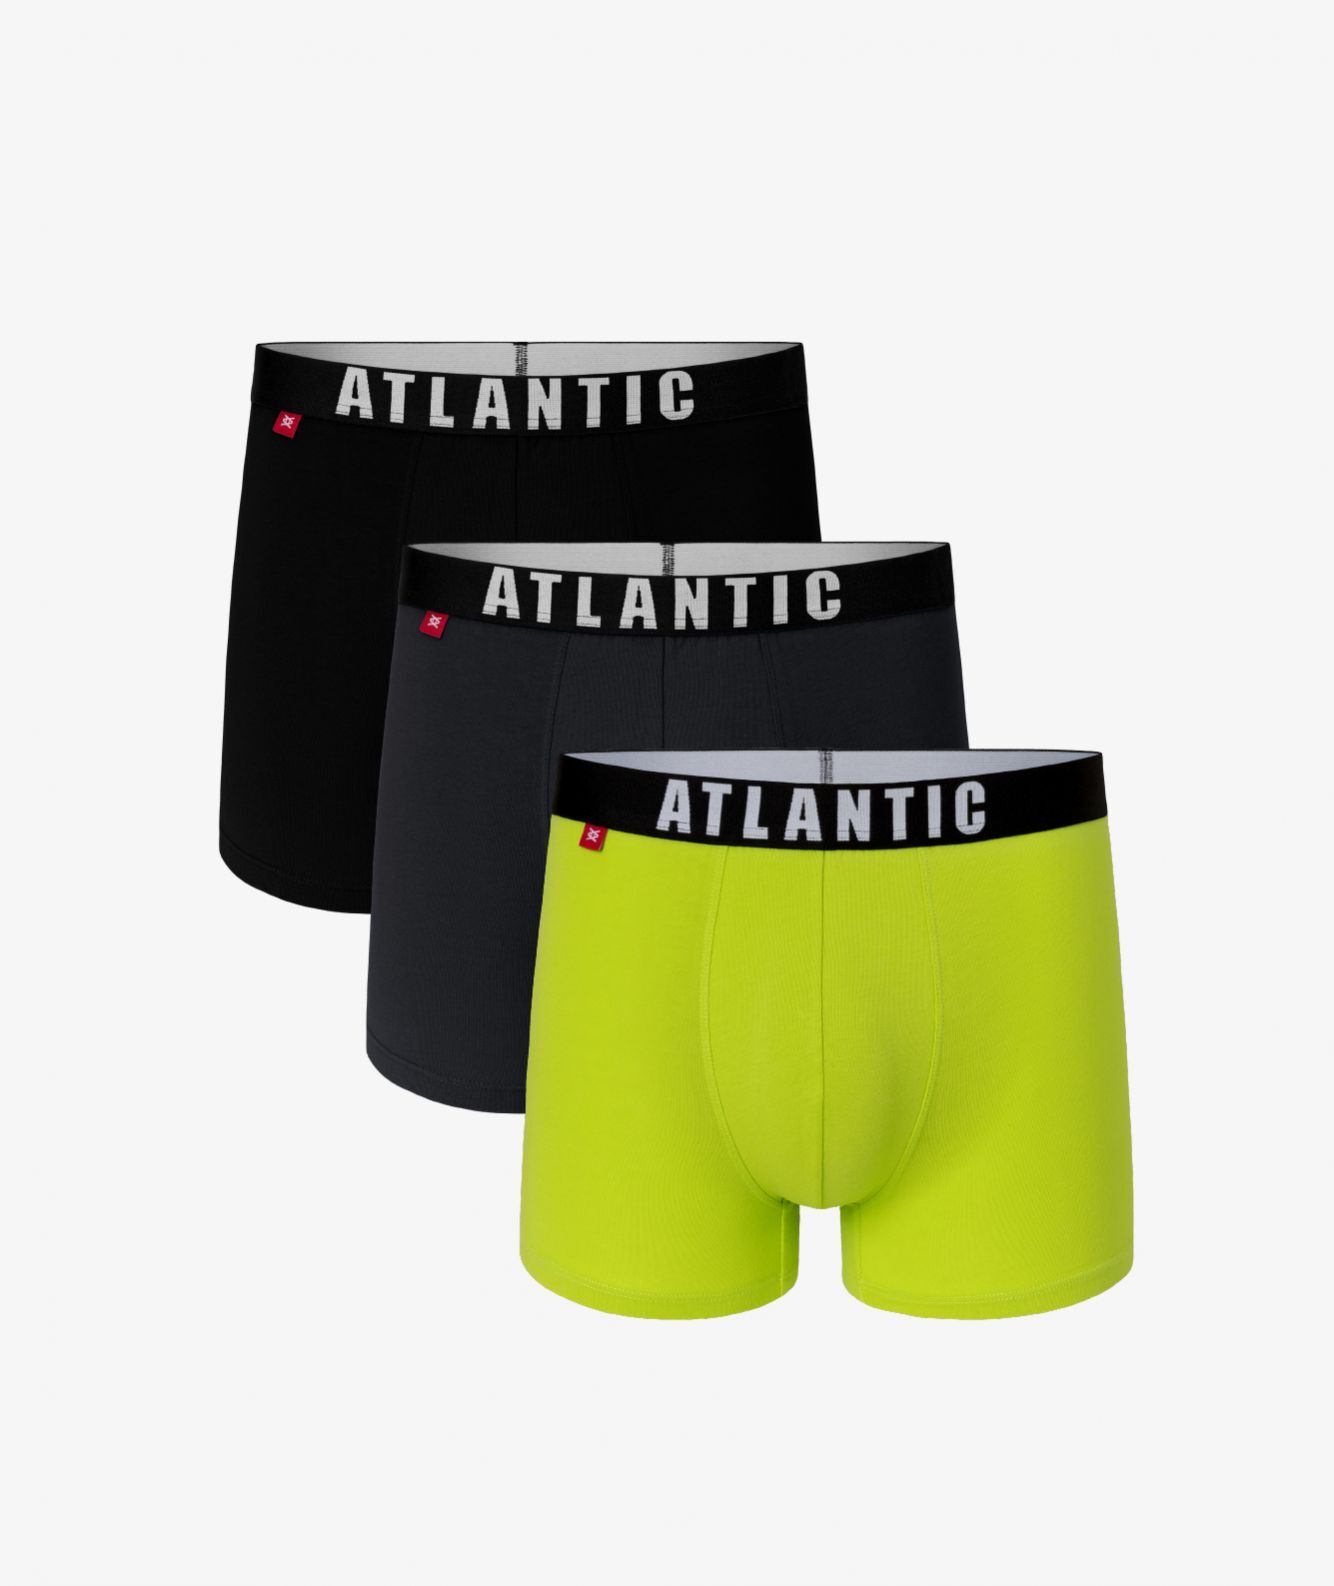 Мужские трусы шорты Atlantic, набор из 3 шт., хлопок, черные + графит + лайм, 3MH-011